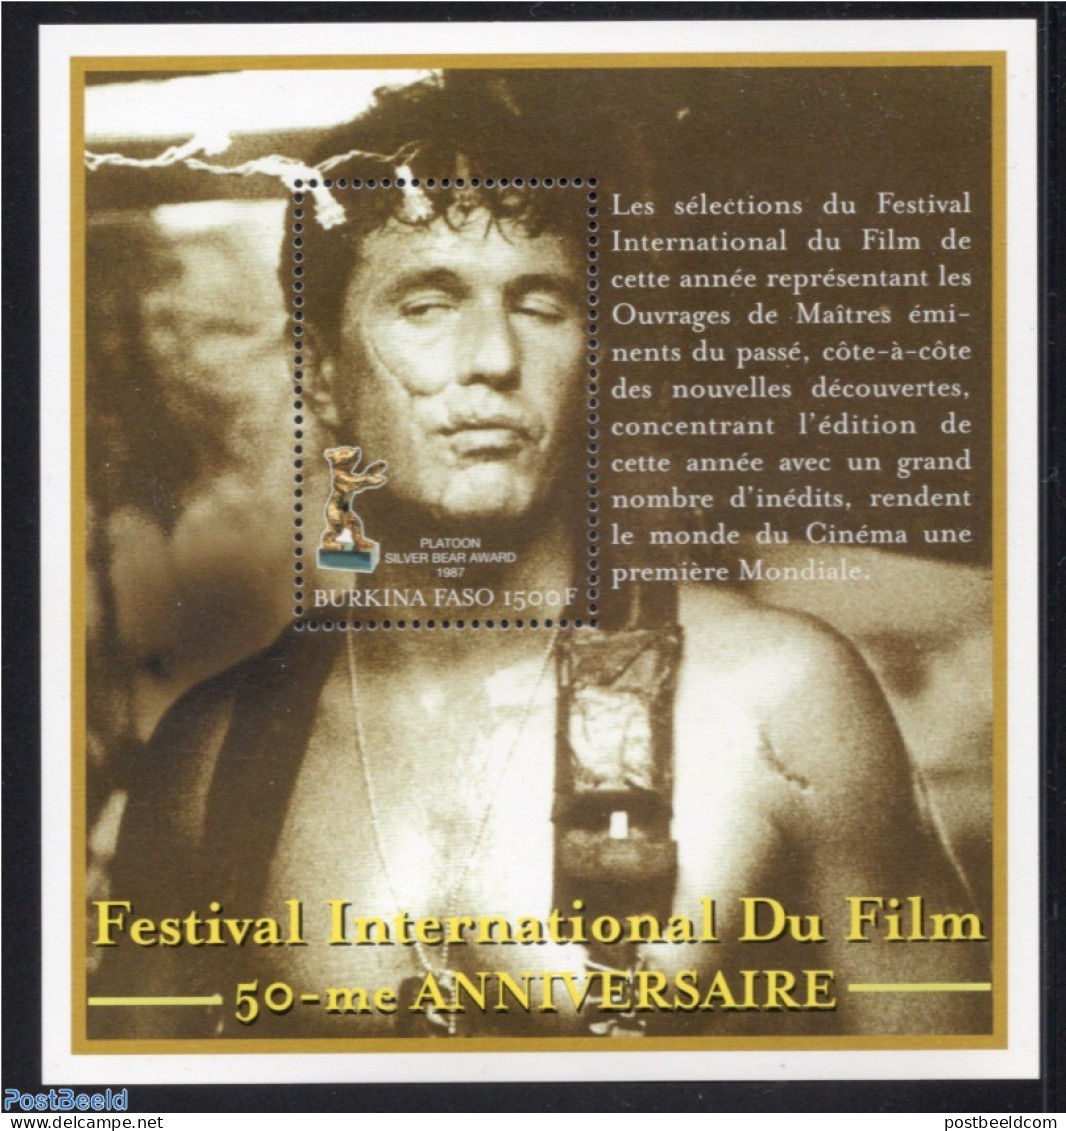 Burkina Faso 2000 Film Festival Berlin S/s, Mint NH, Performance Art - Film - Movie Stars - Cinéma